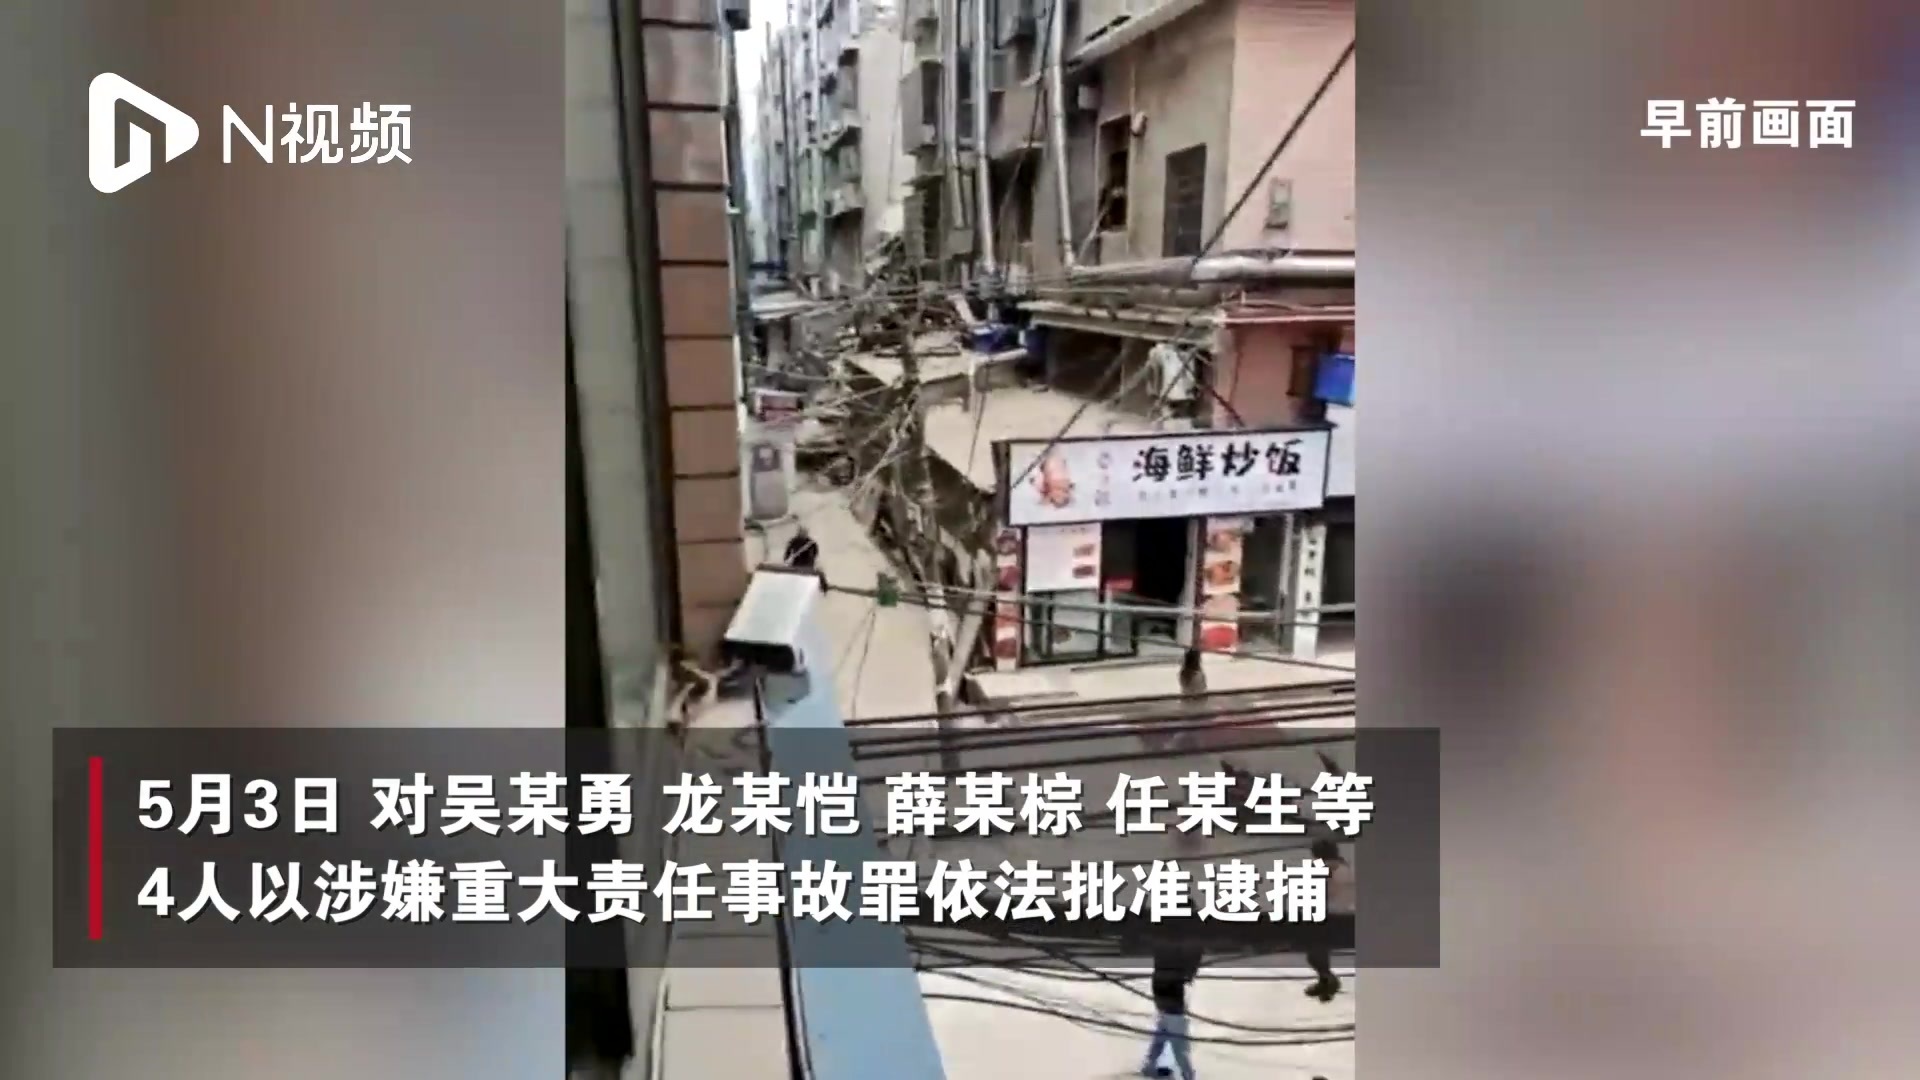 优享资讯 | 湖南长沙楼房倒塌事故救援工作结束 53人遇难